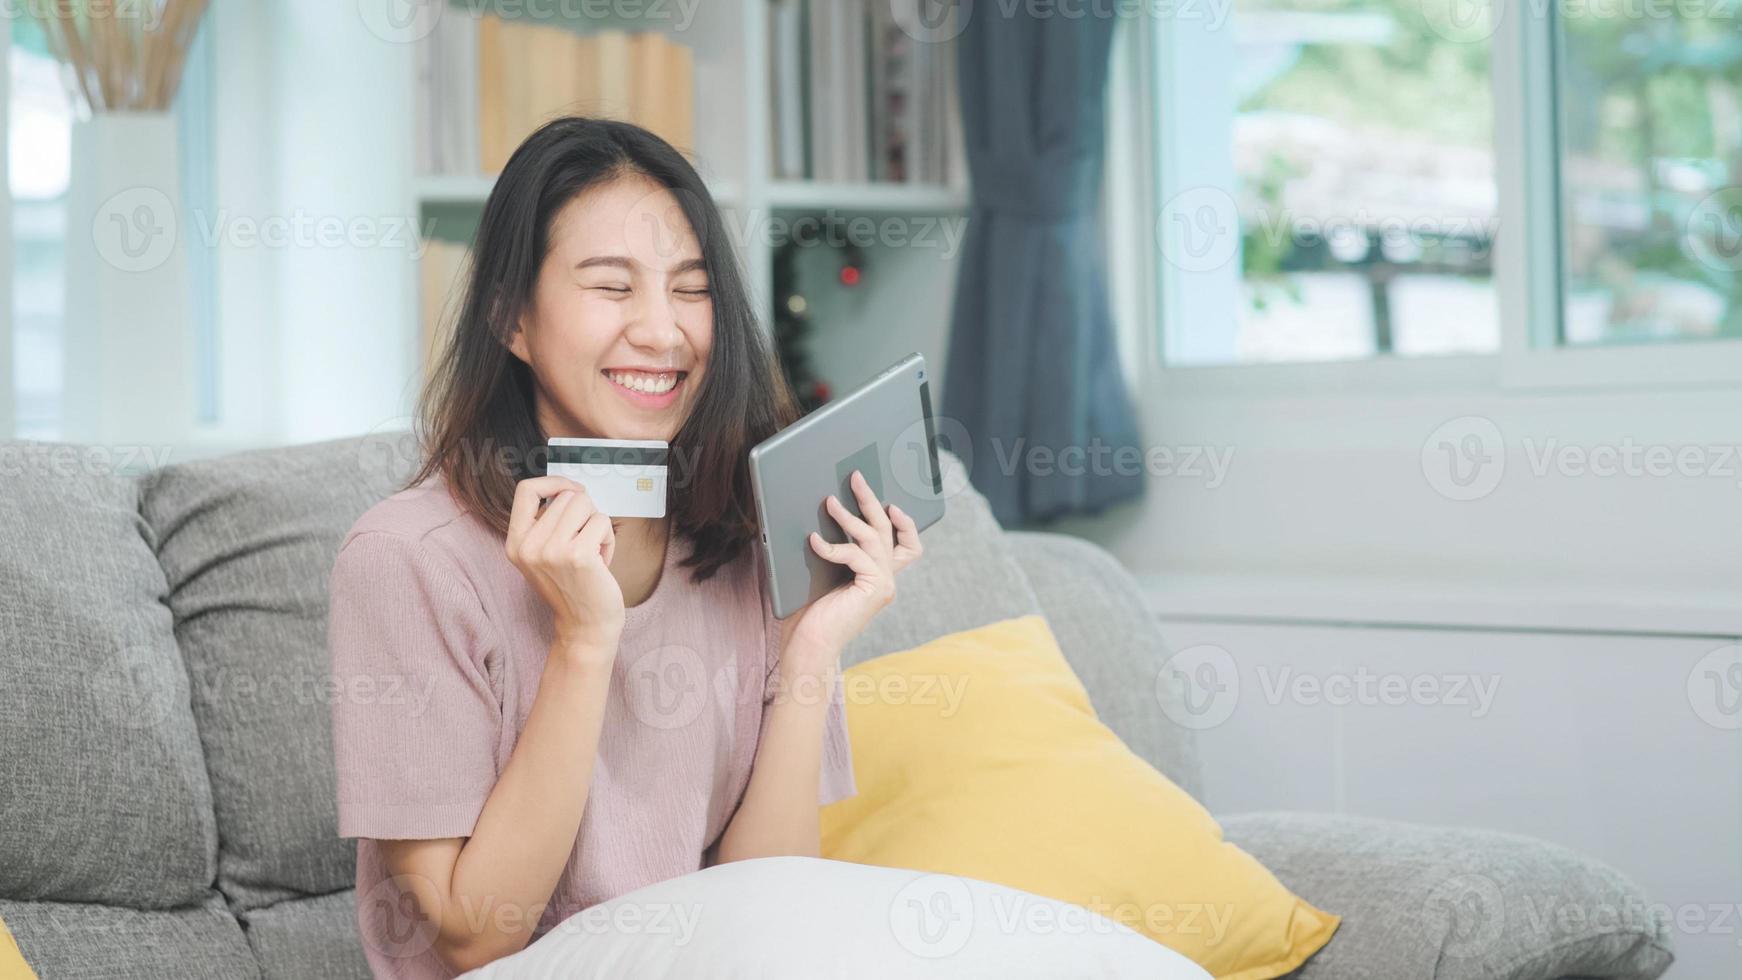 giovane donna asiatica sorridente che utilizza tablet che acquista acquisti online con carta di credito mentre è sdraiata sul divano quando si rilassa nel soggiorno di casa. stile di vita latino e donne ispaniche di etnia al concetto di casa. foto